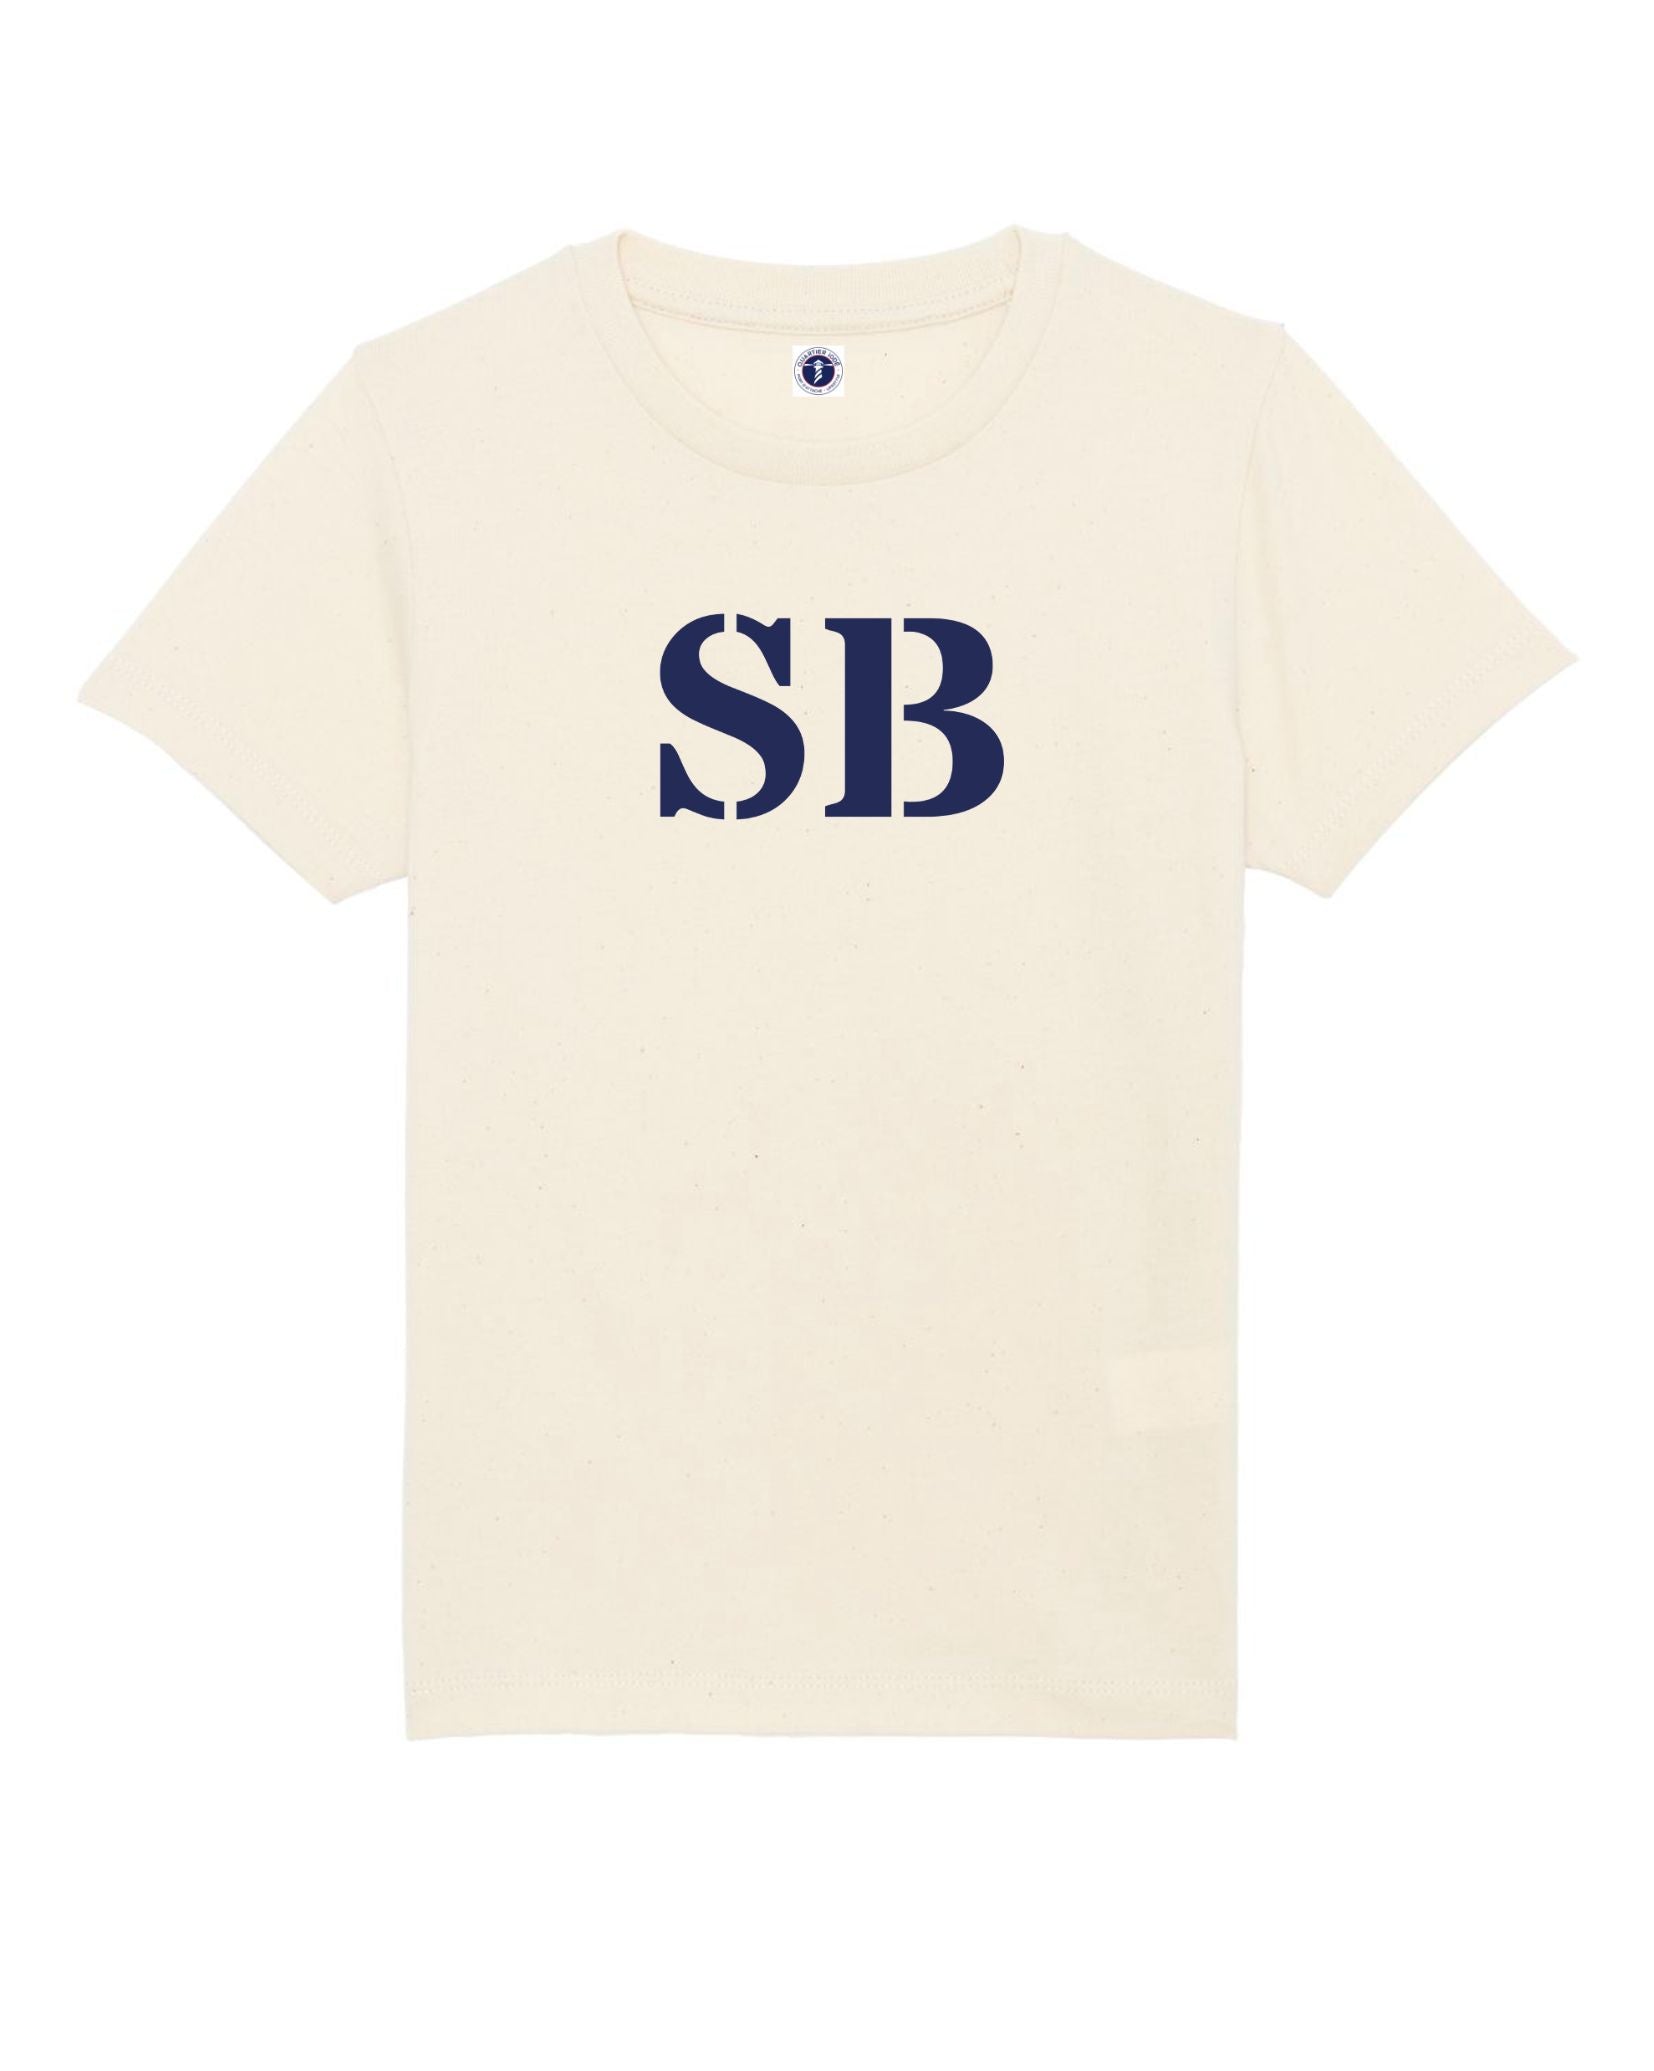 Saint Brieuc ou SB, de la marque Quartier Idoé, sur ce Tshirt filels et garçons, blanc écru.